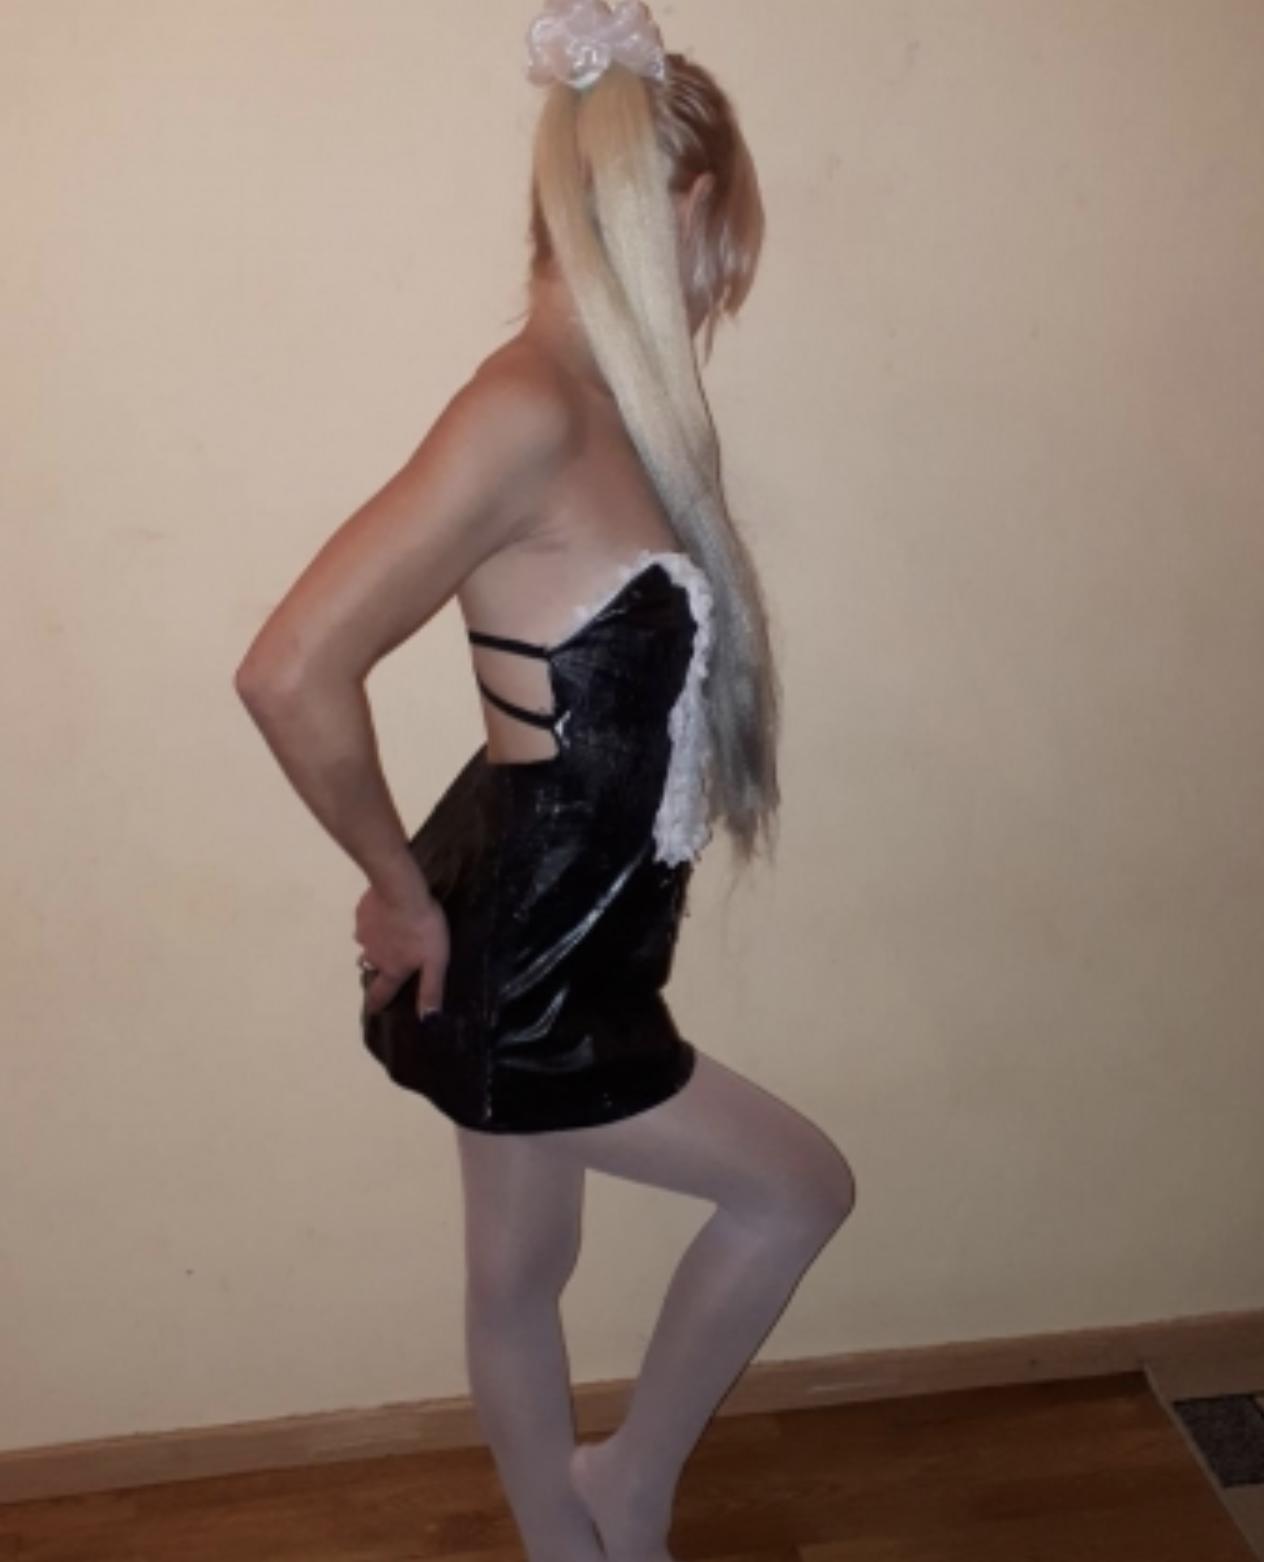 Проститутка Анна, фото 3, тел: 0631561694. В центре города - Киев